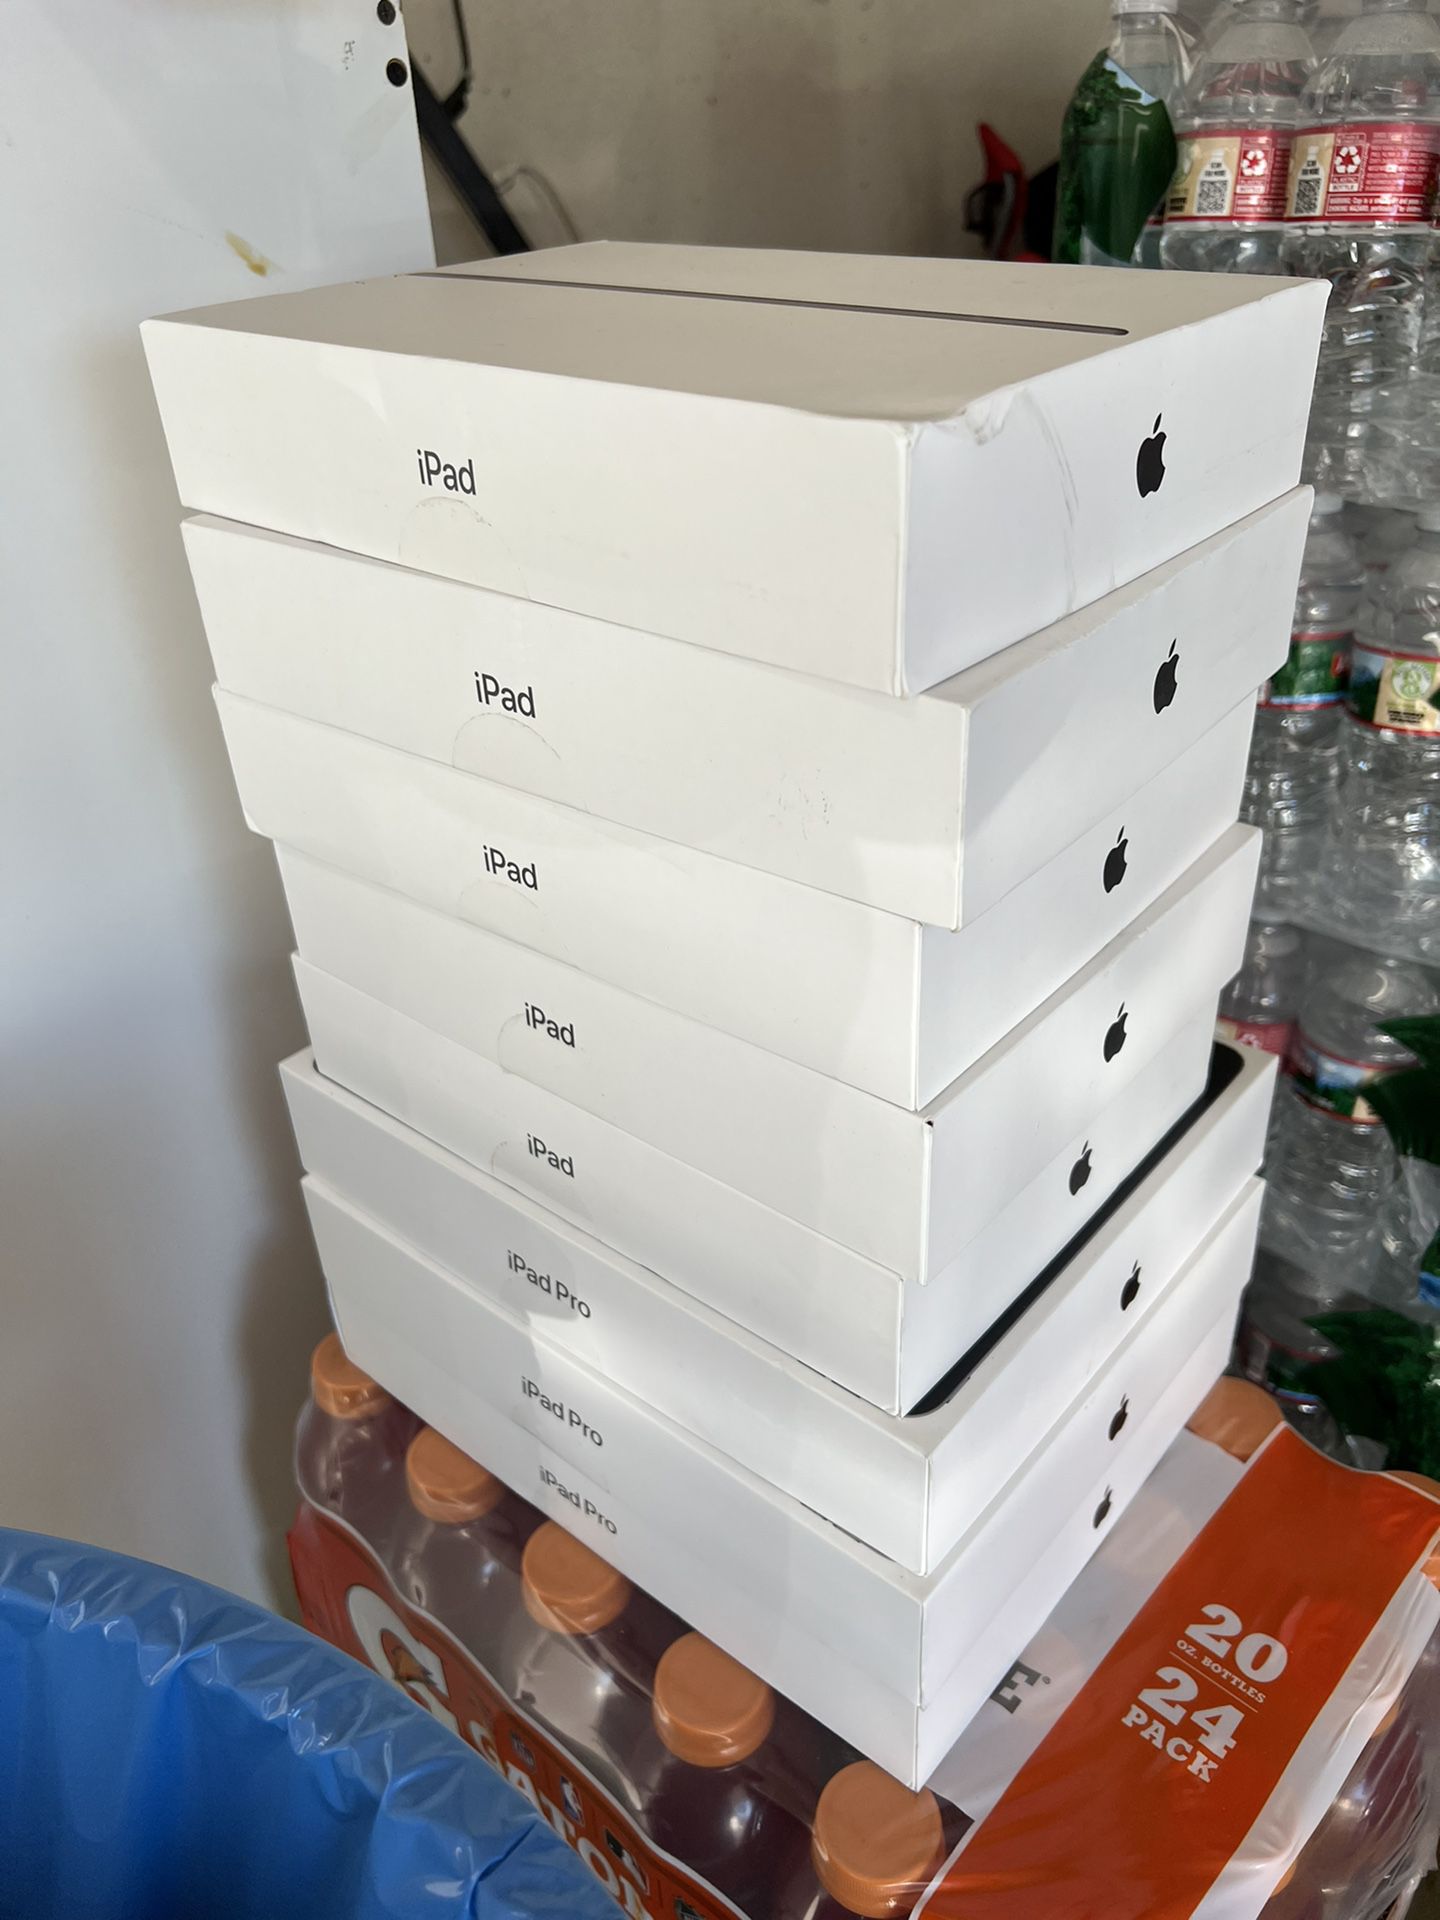 iPad Boxes (empty)